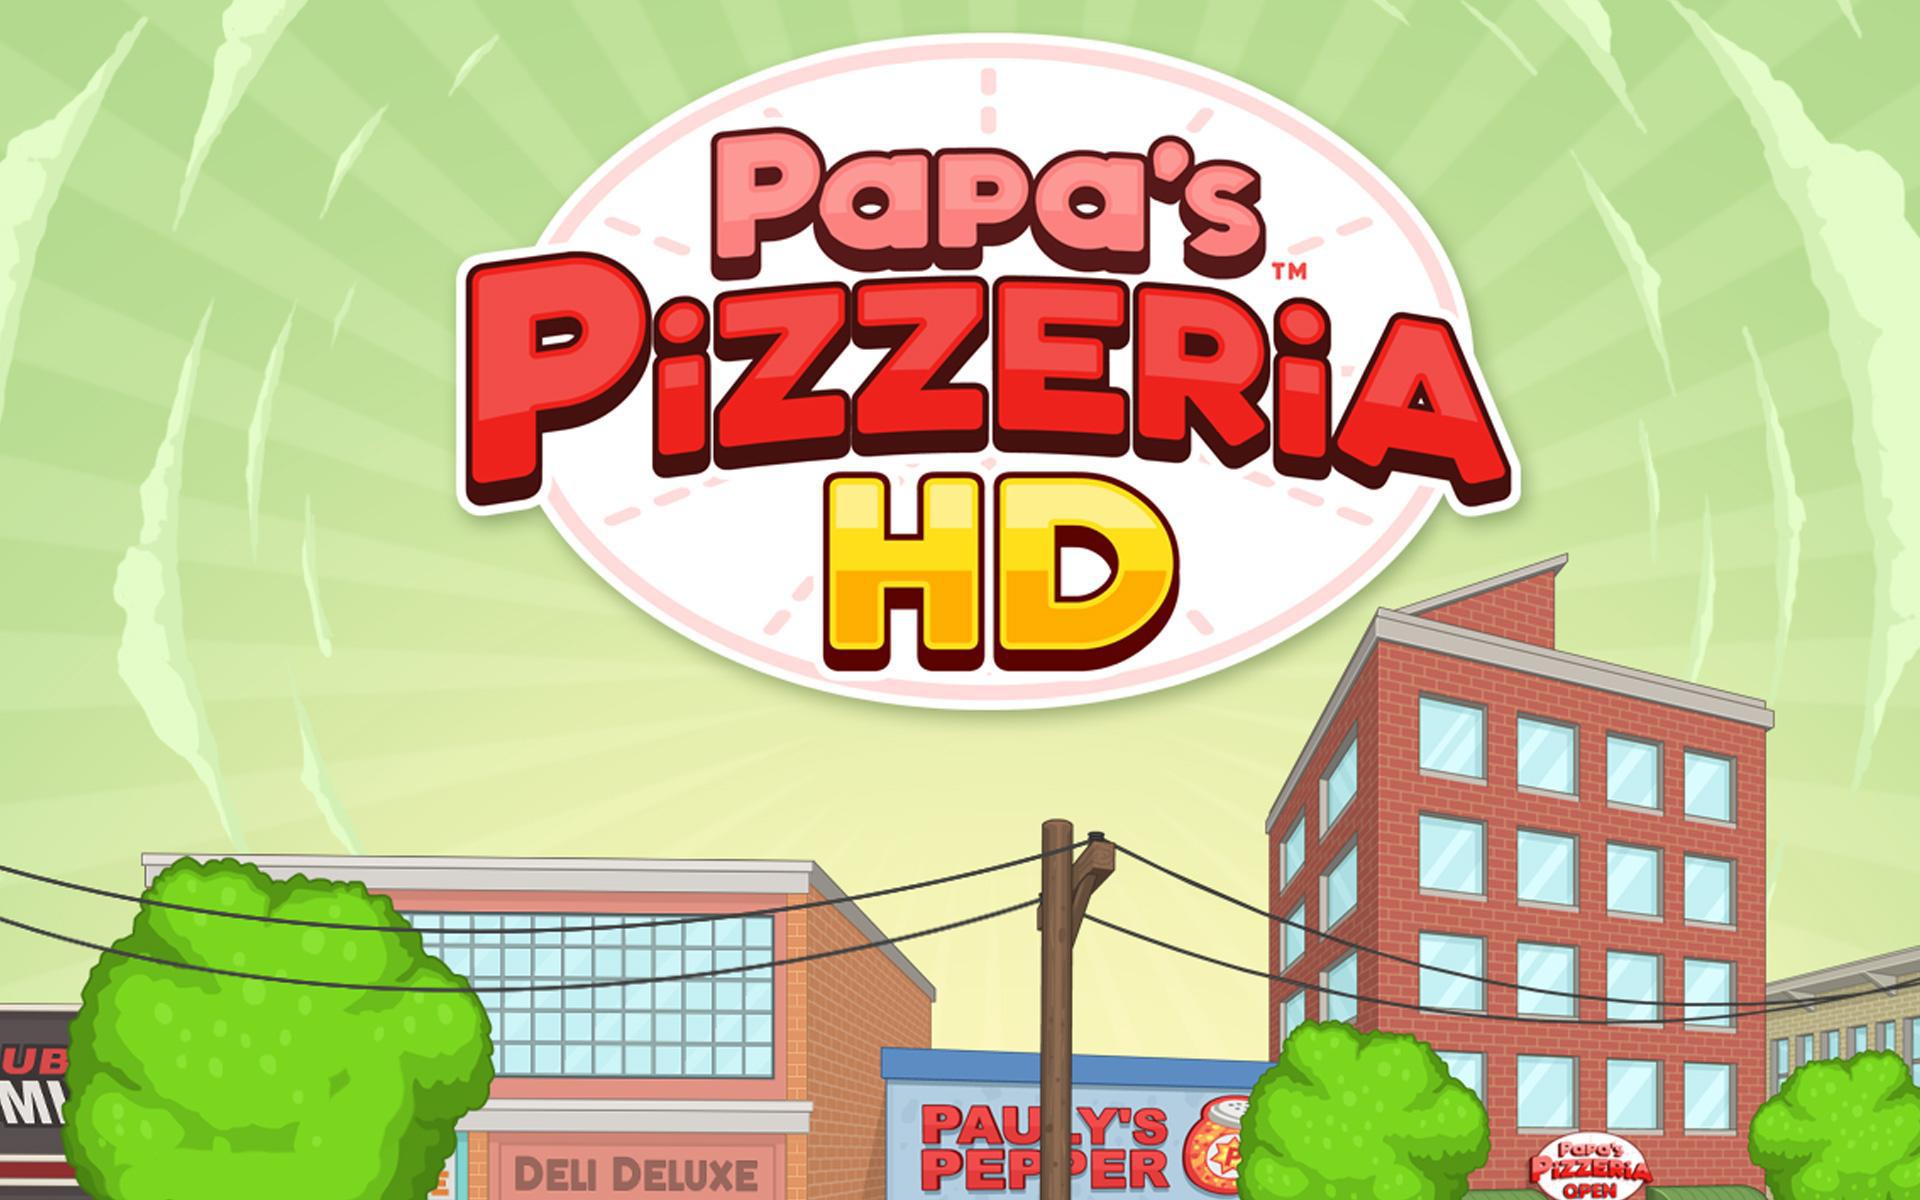 download papas pizzeria for pc